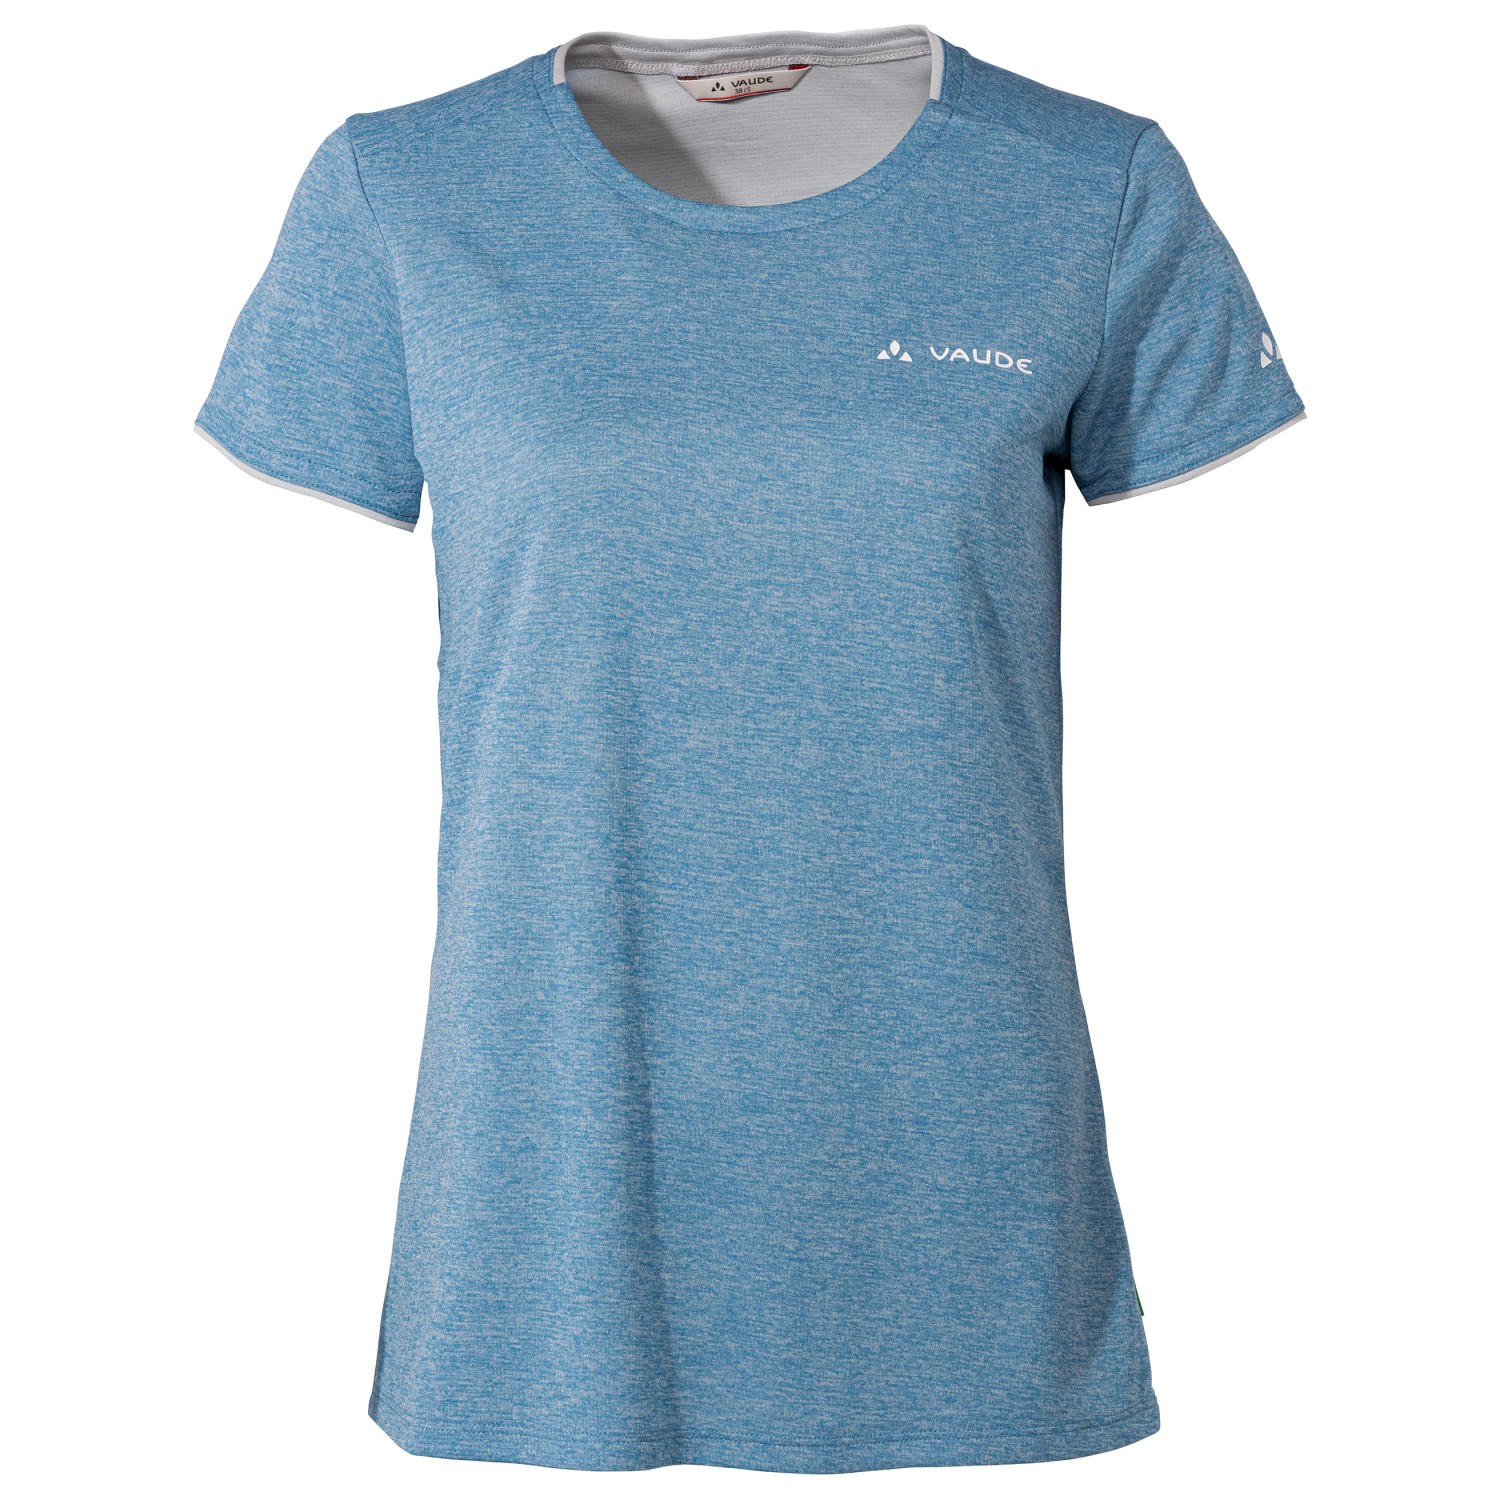 Функциональная рубашка Vaude Women's Essential T Shirt, цвет Pastel Blue